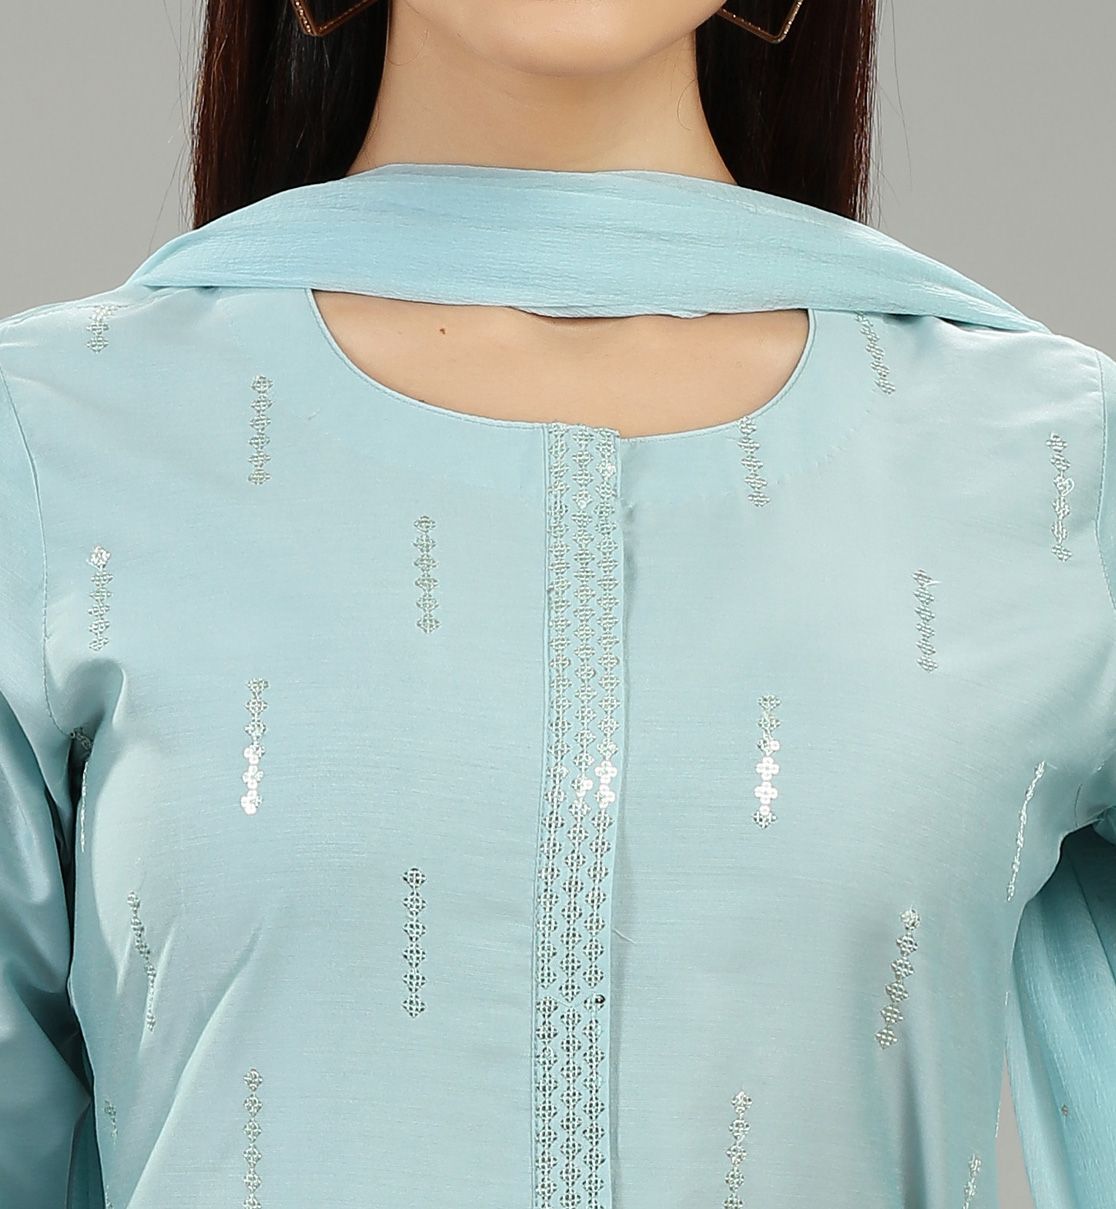 Saadhika Sky Blue Cotton Silk Embroidered Suit Set